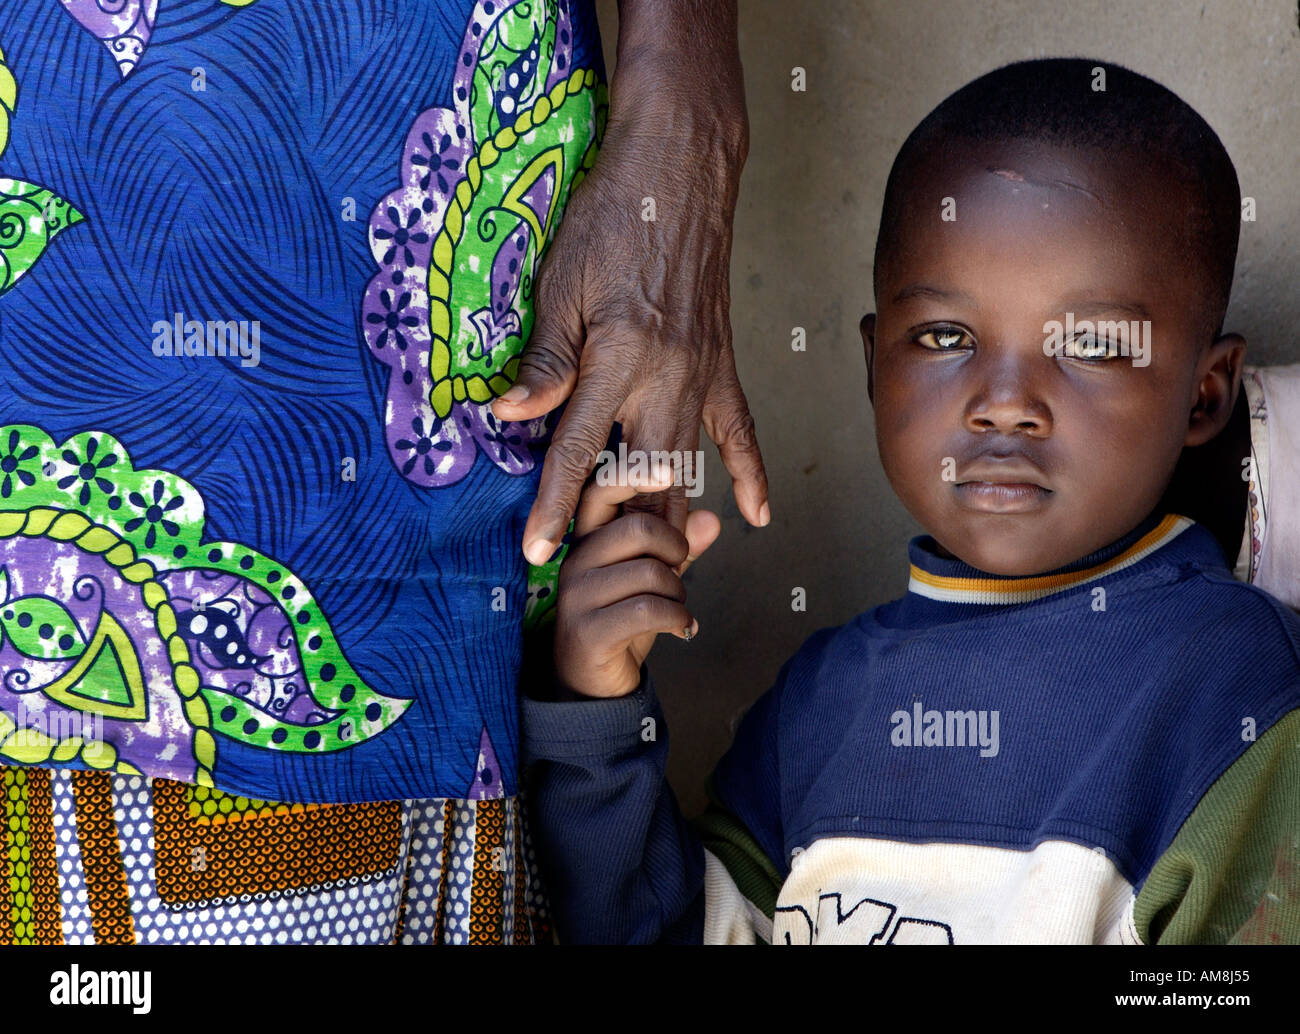 Ouagadougou Burkina Faso 31 agosto 2005 la paura i gemelli del colera un bambino malato si aggrappa a sua madre spaventati dal Foto Stock